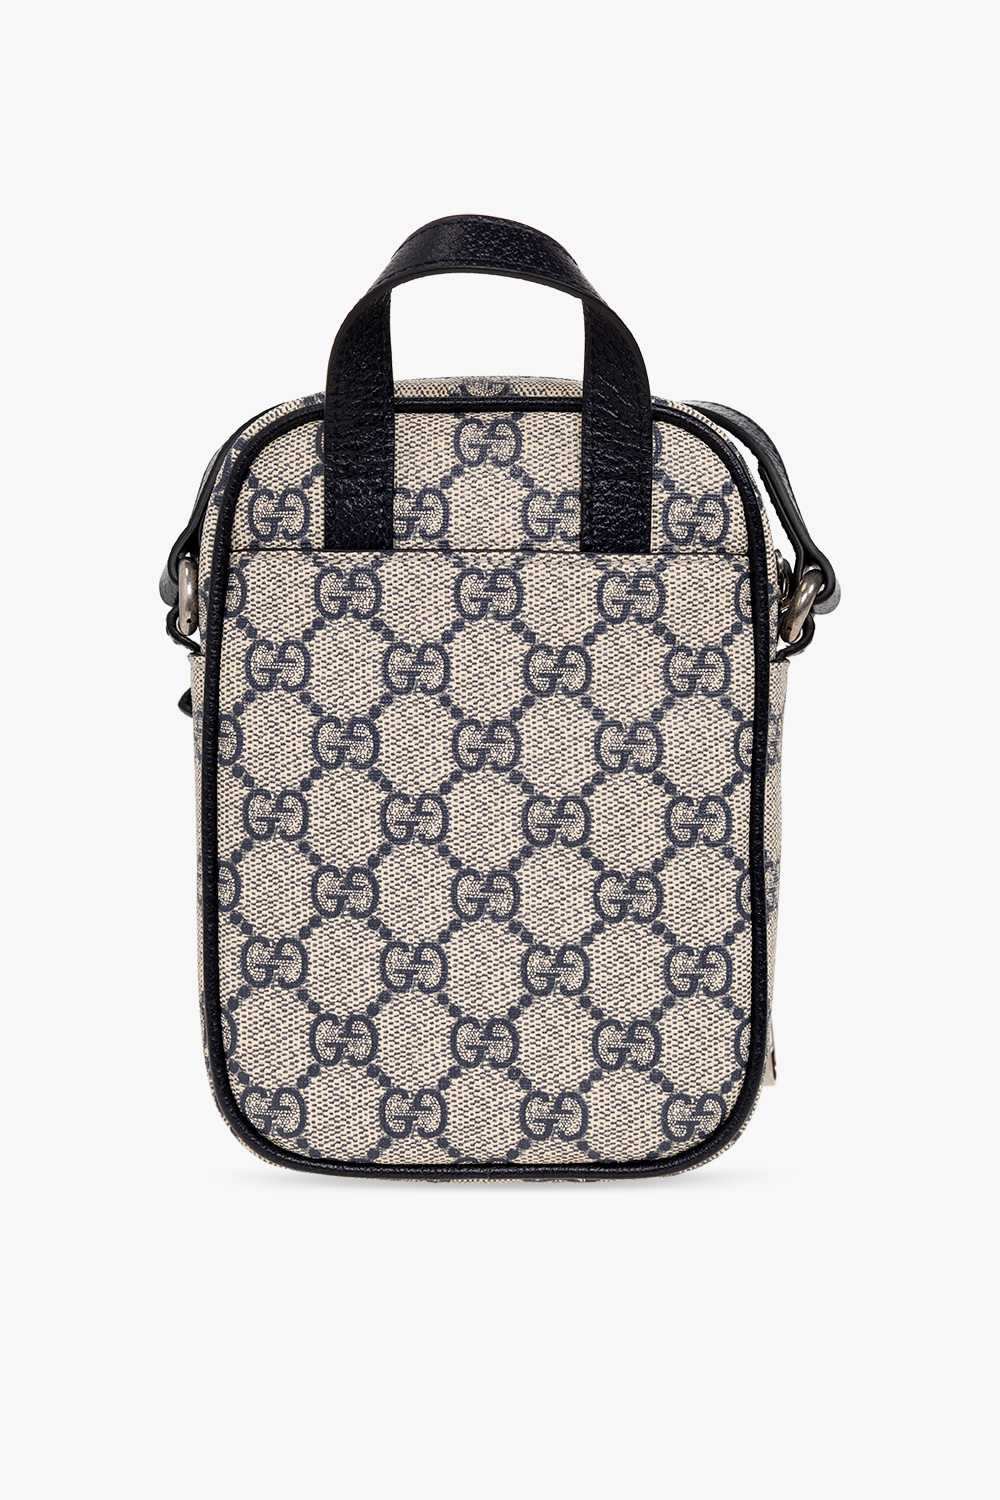 Gucci ‘Ophidia Mini’ backpack bag